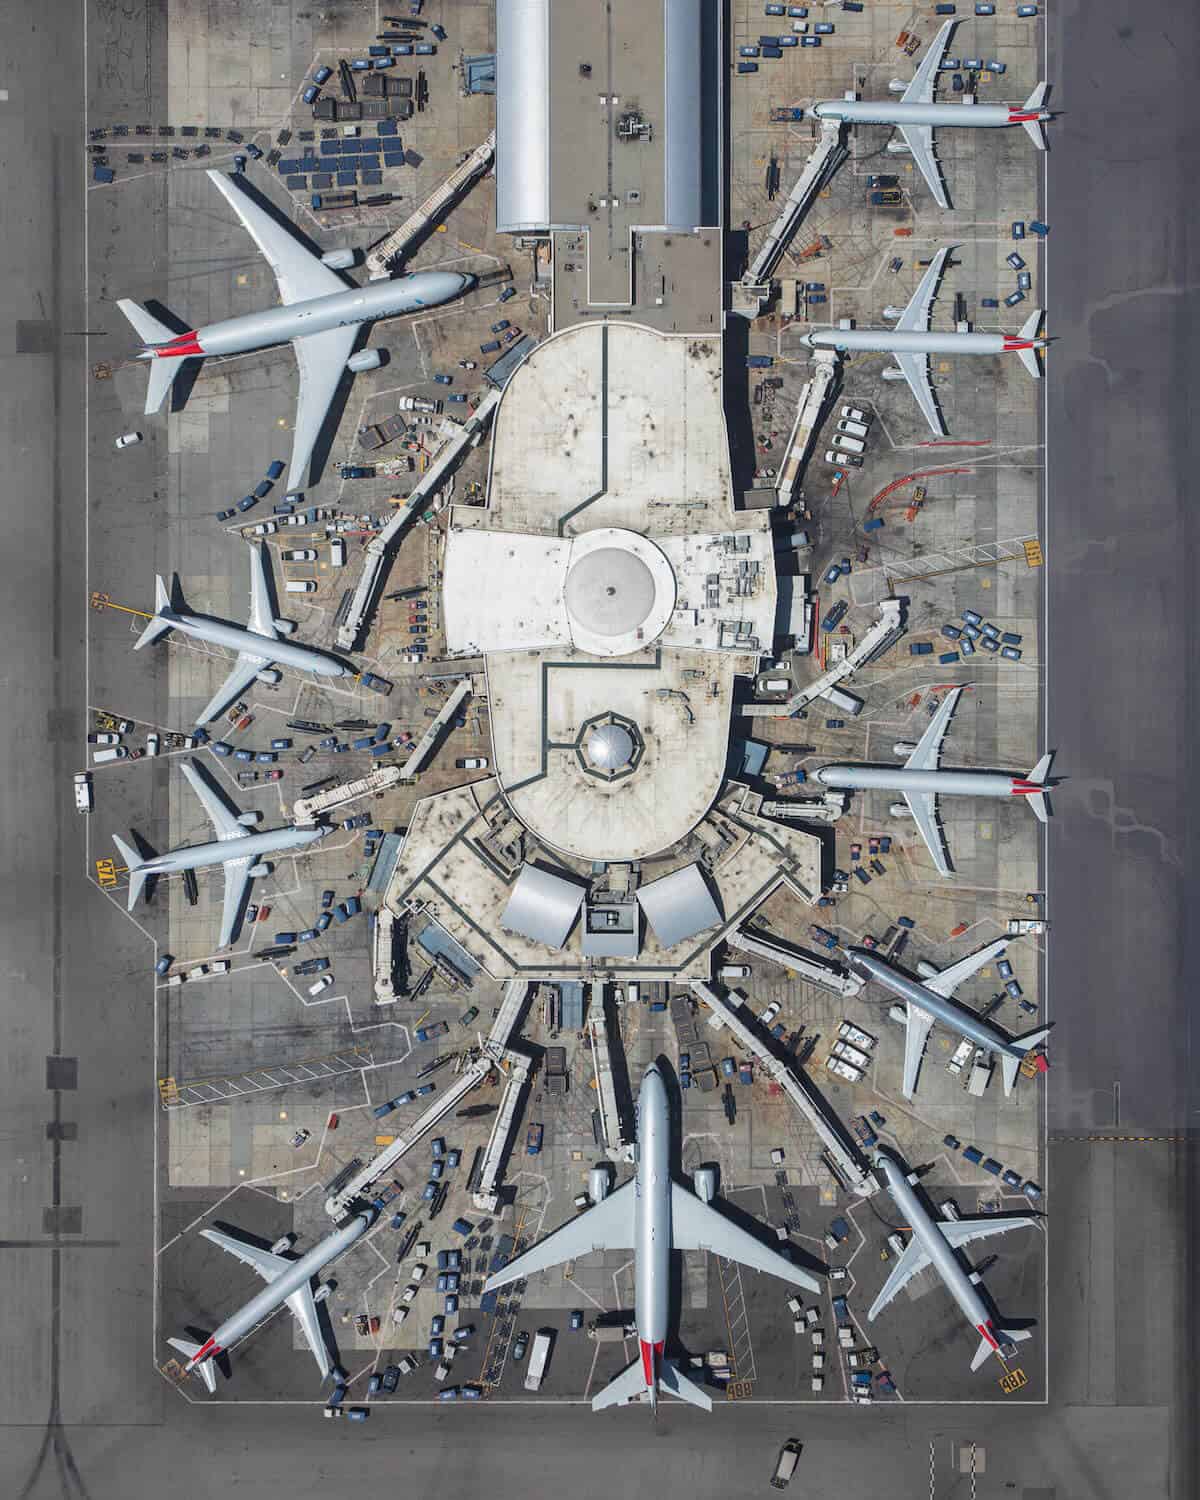 Letecké fotografie zachytené z vrtuľníka odhaľujúce ohromujúcu symetriu letísk - mike kelley airport photography 9 - Letecké fotografie zachytené z vrtuľníka odhaľujúce ohromujúcu symetriu letísk